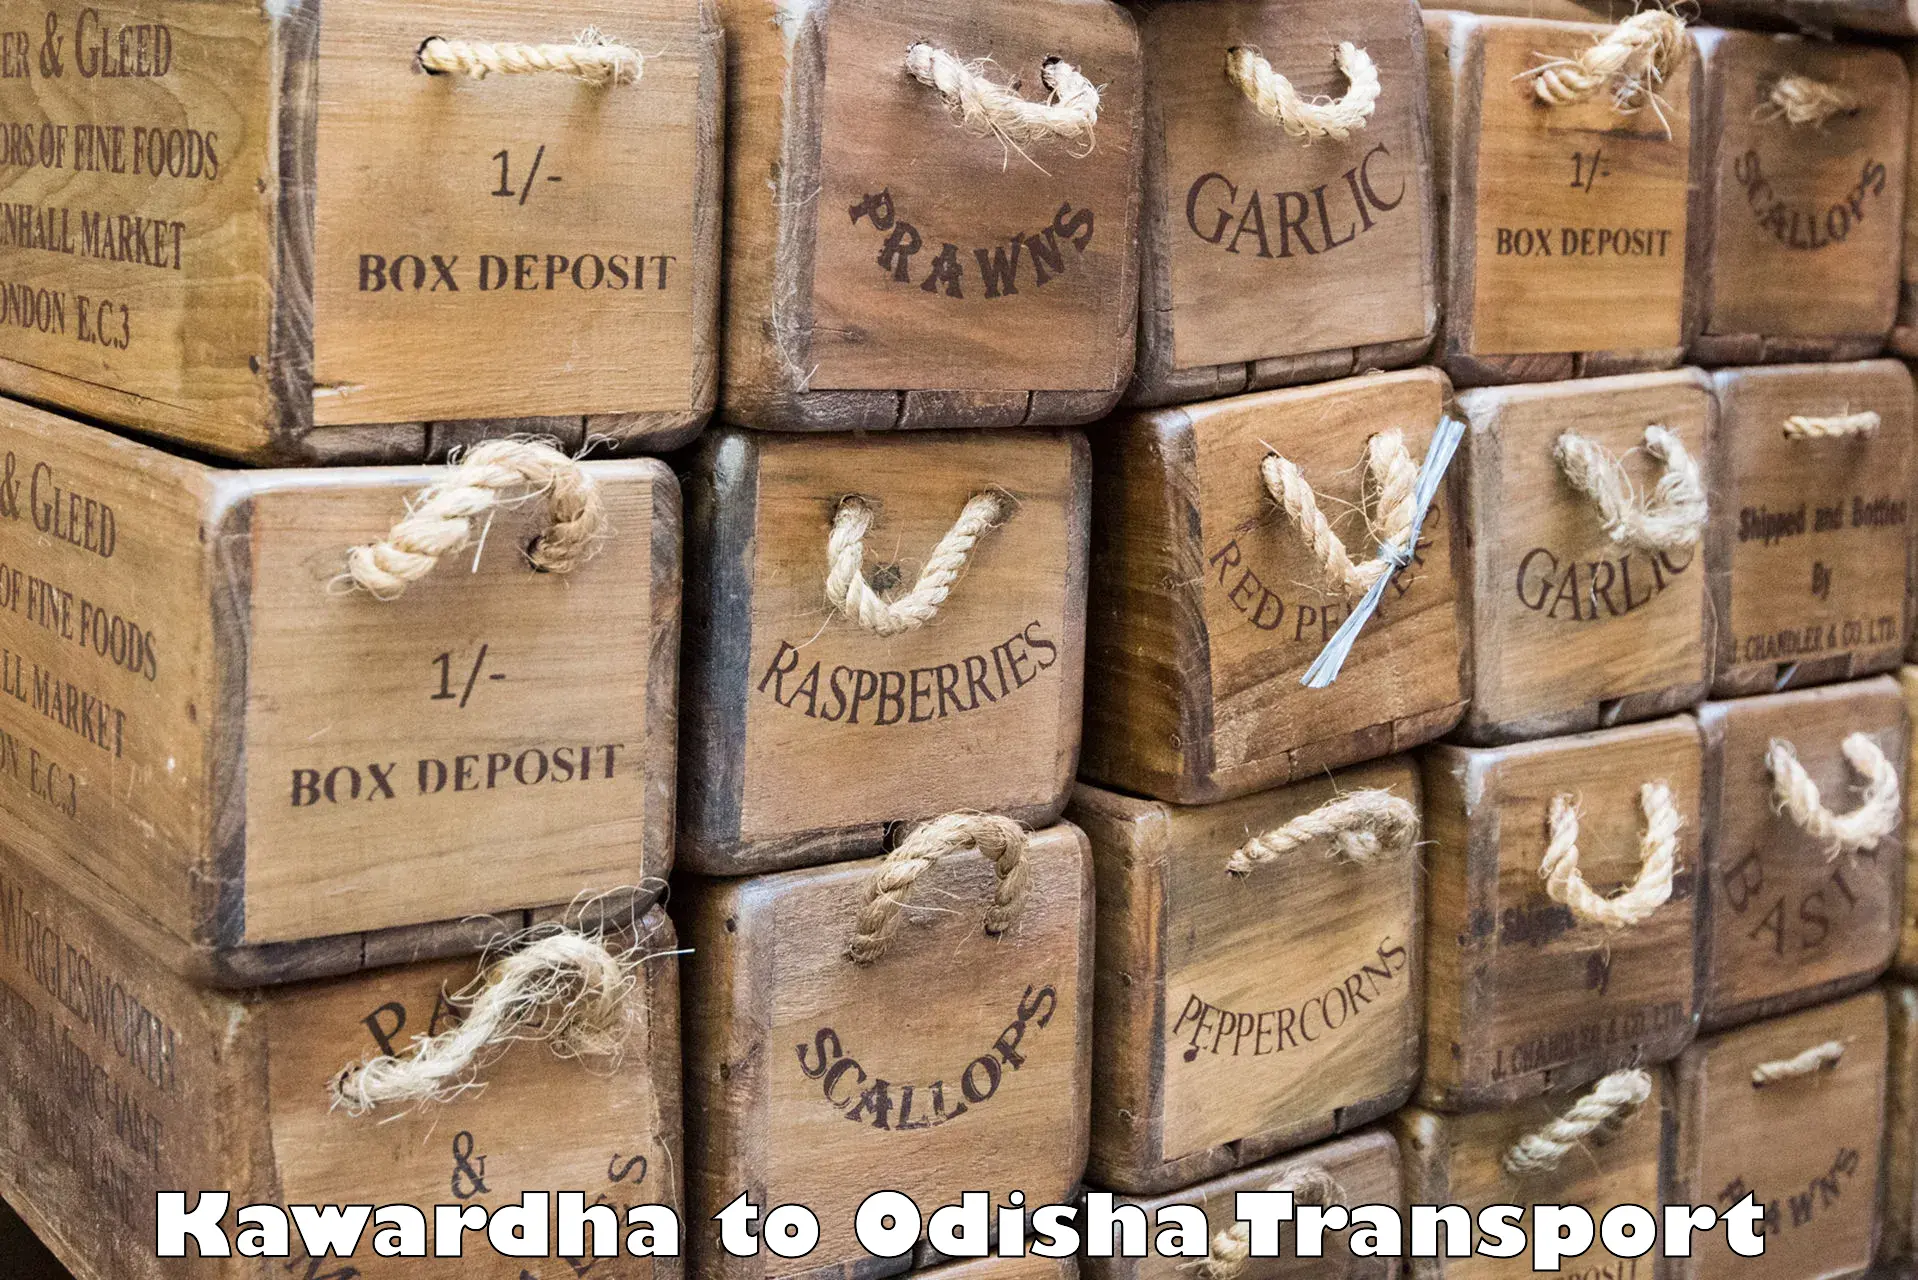 Express transport services Kawardha to Mahakalapada